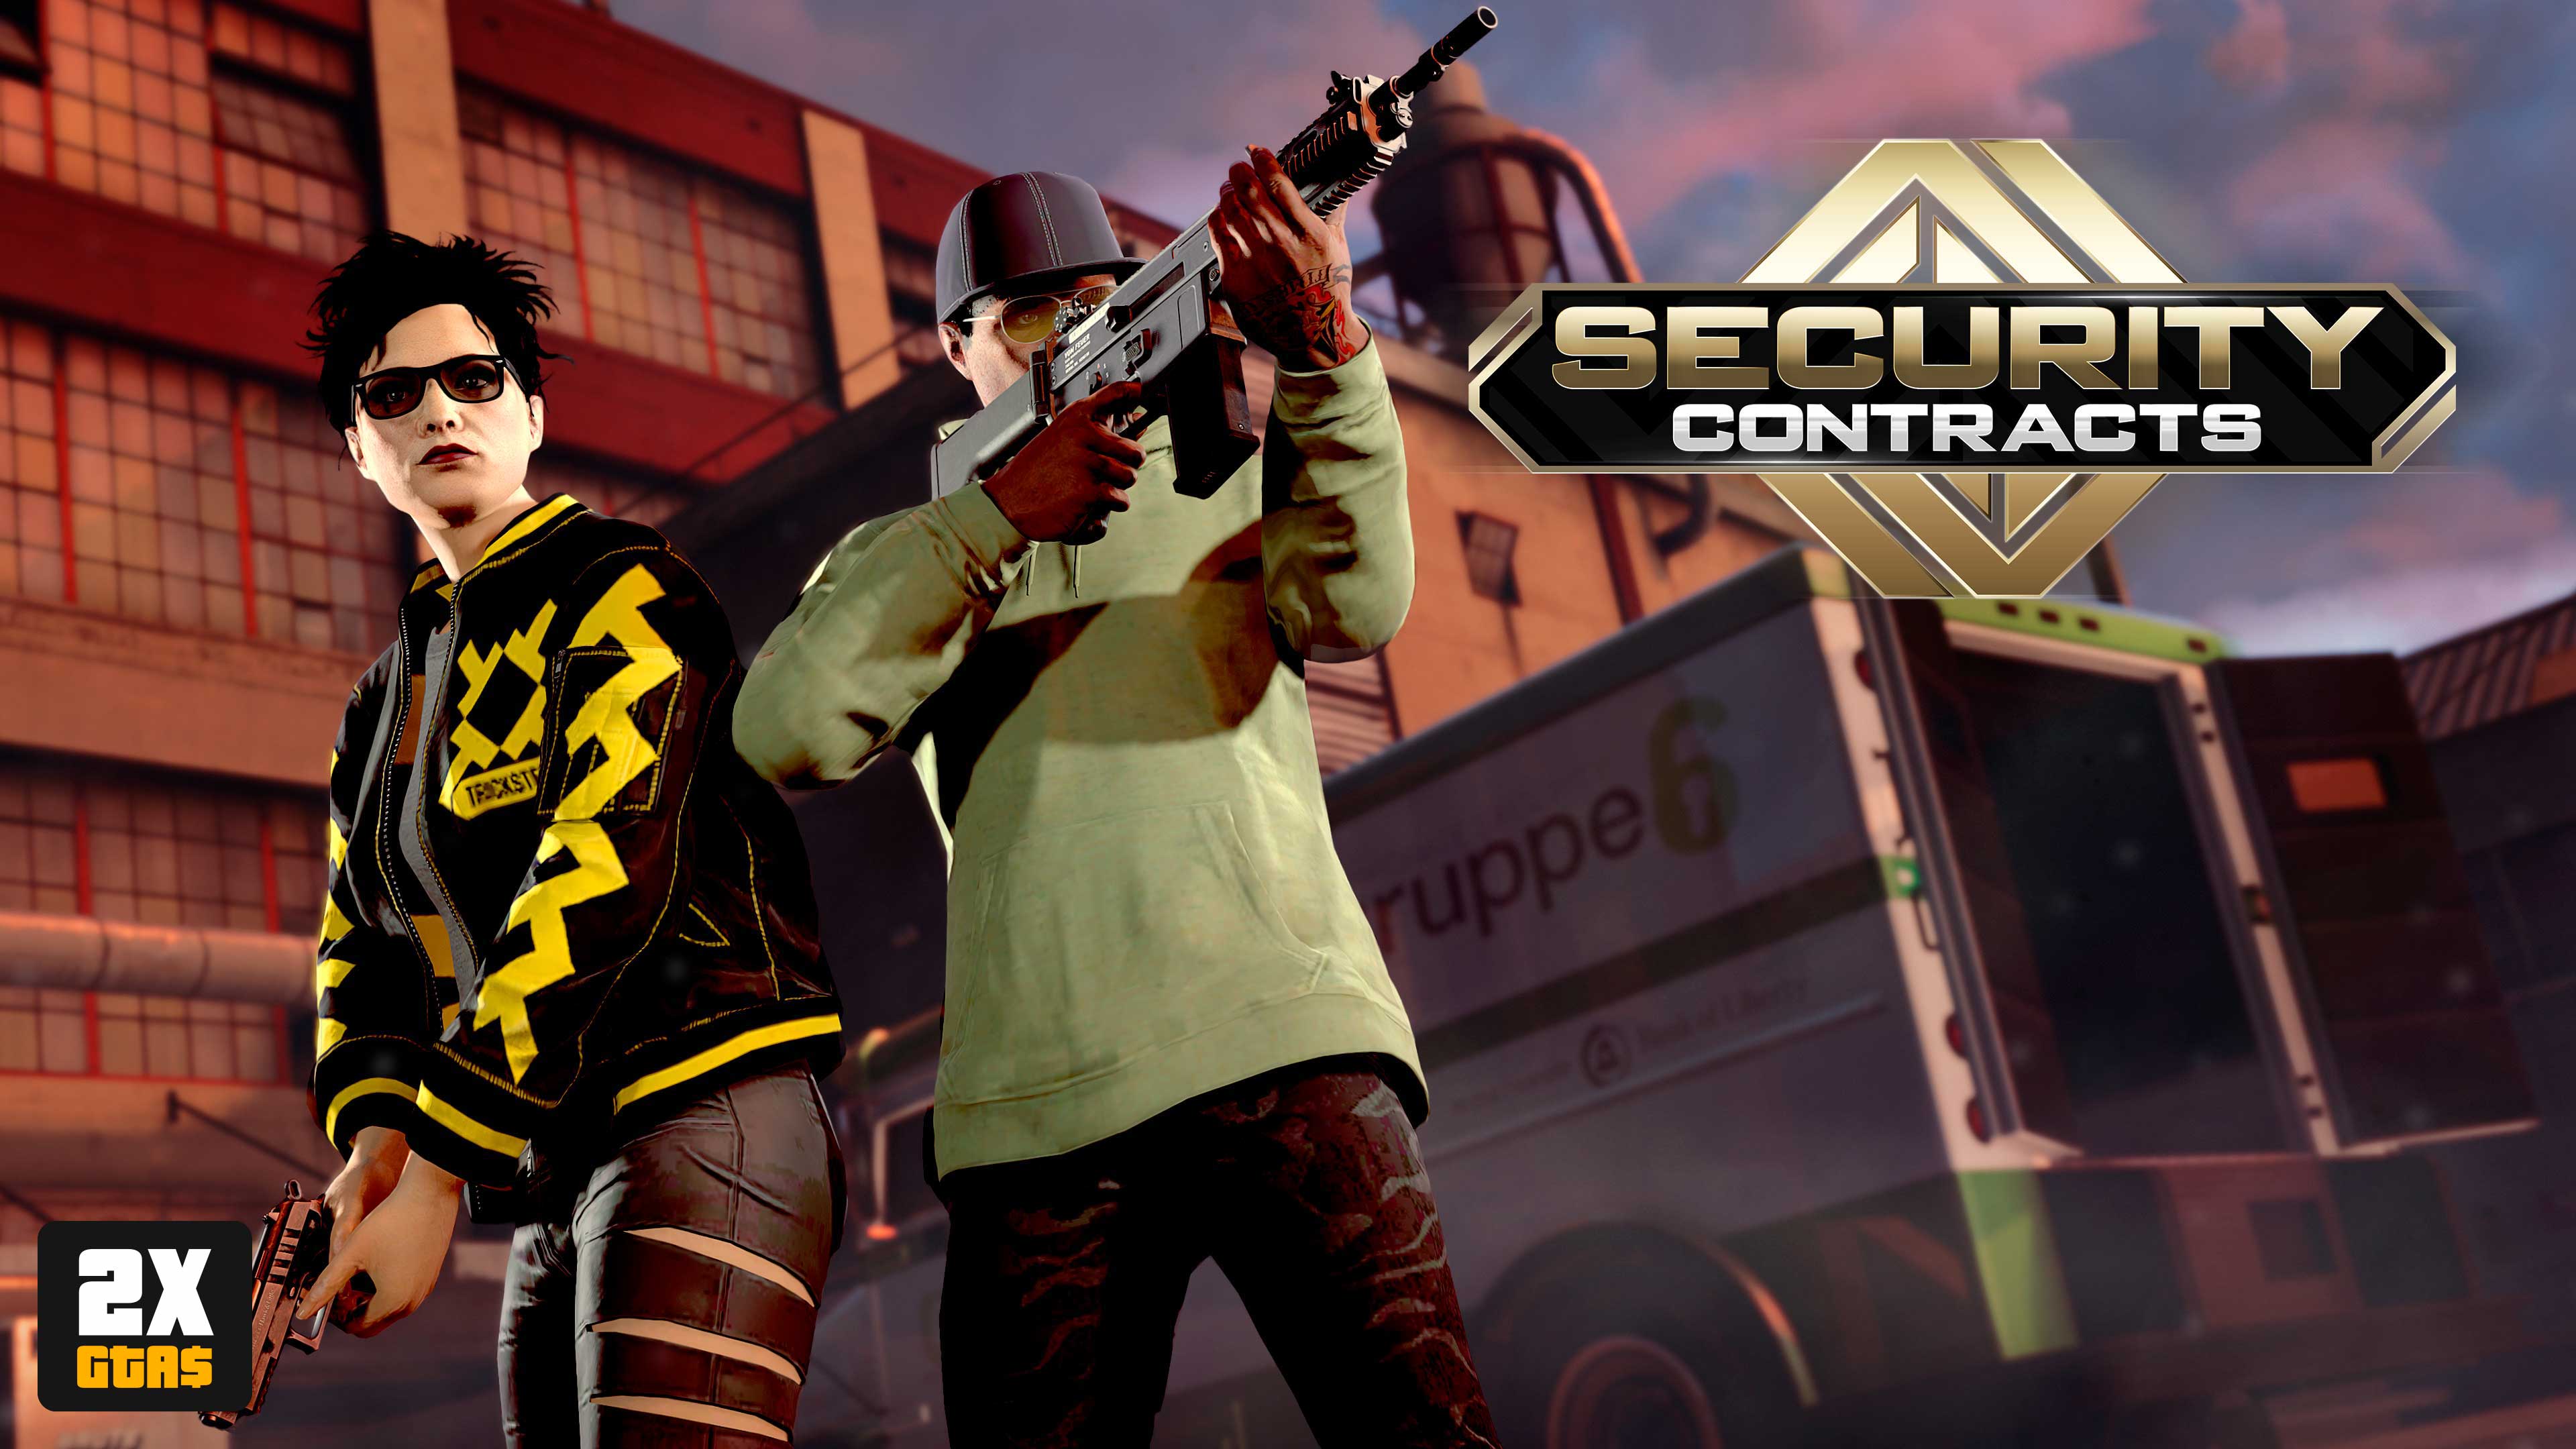 imagem de personagens no GTA Online com o logotipo dos Contratos de Segurança e botão de 2x GTA$